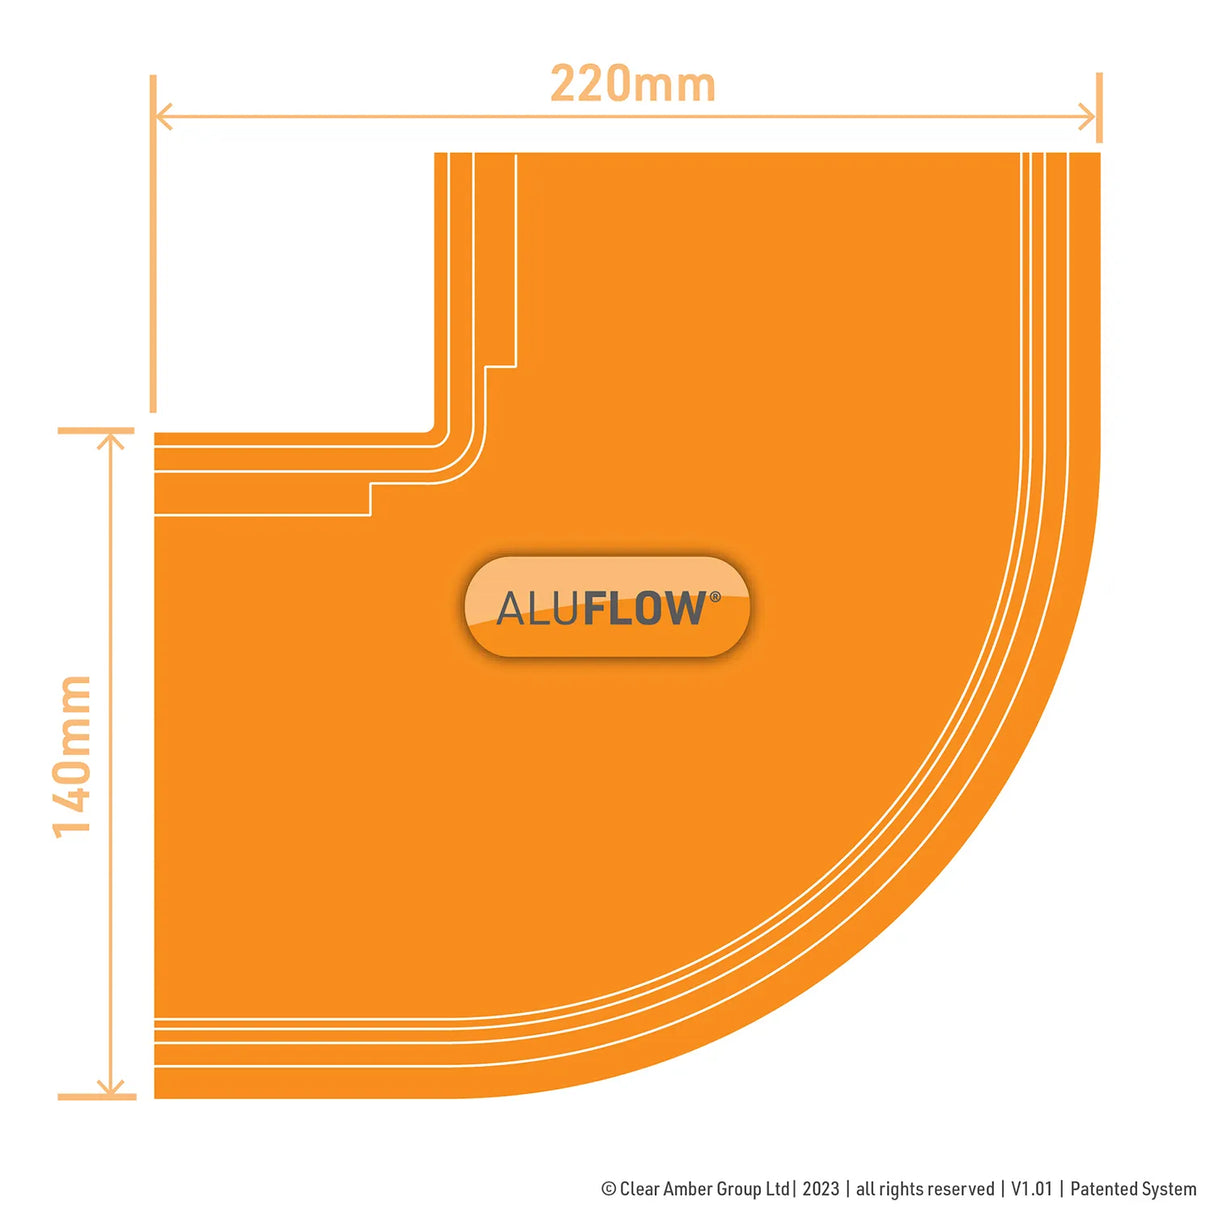 aluflow-external-gutter-angle-measurements-140mm-wide-80mm-deep-220mm-overall